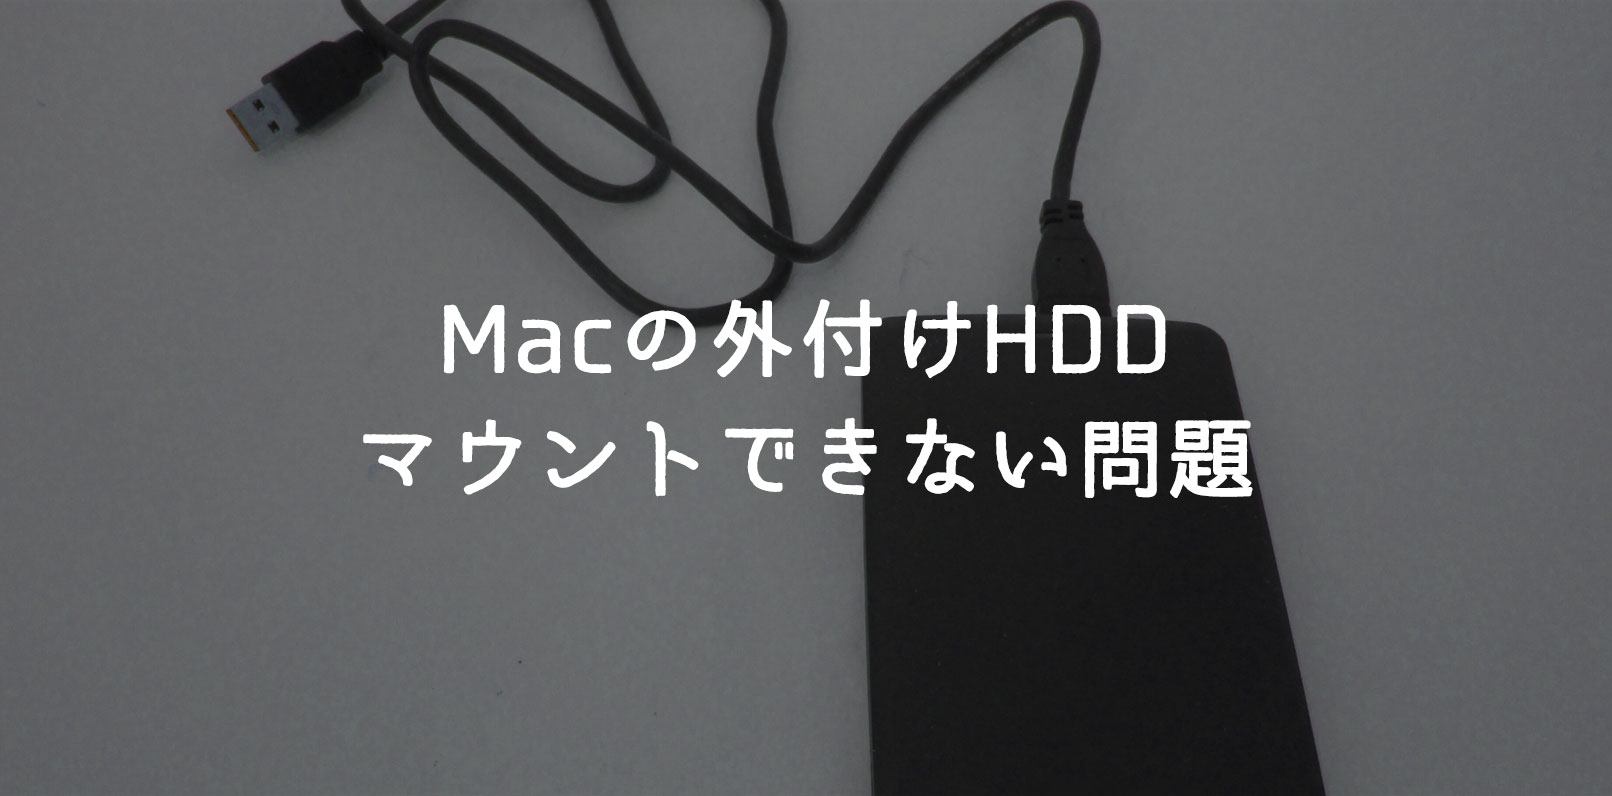 Mac】外付けHDDがマウントされない事象を解消した話 | webico blog